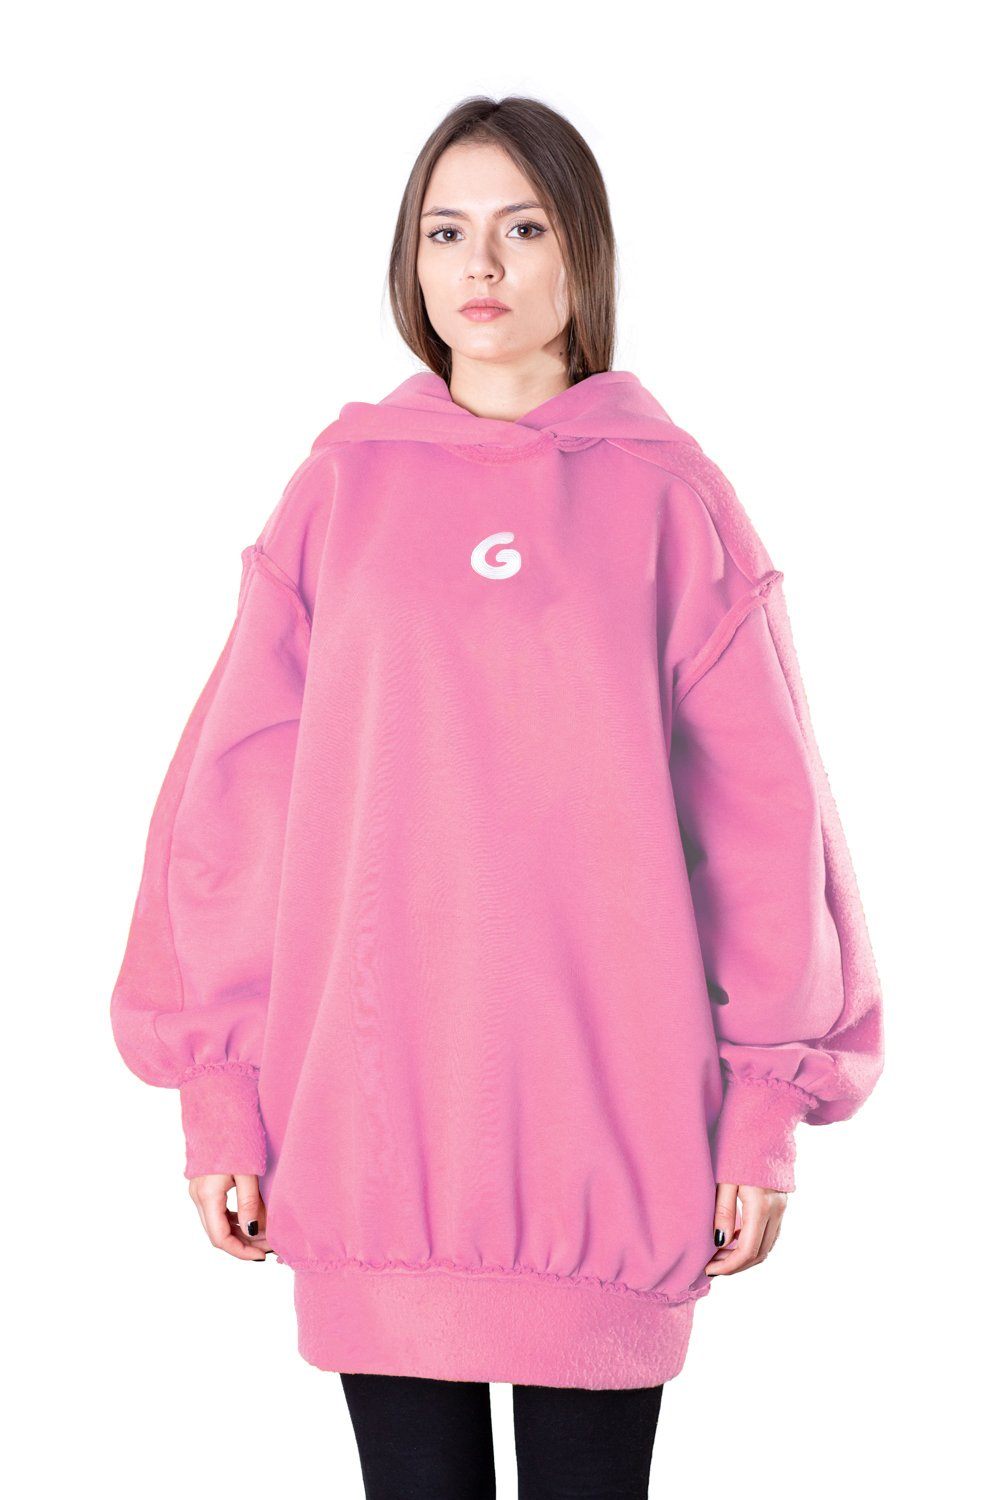 TheG Fresh Oversize Hoody Woman // pink